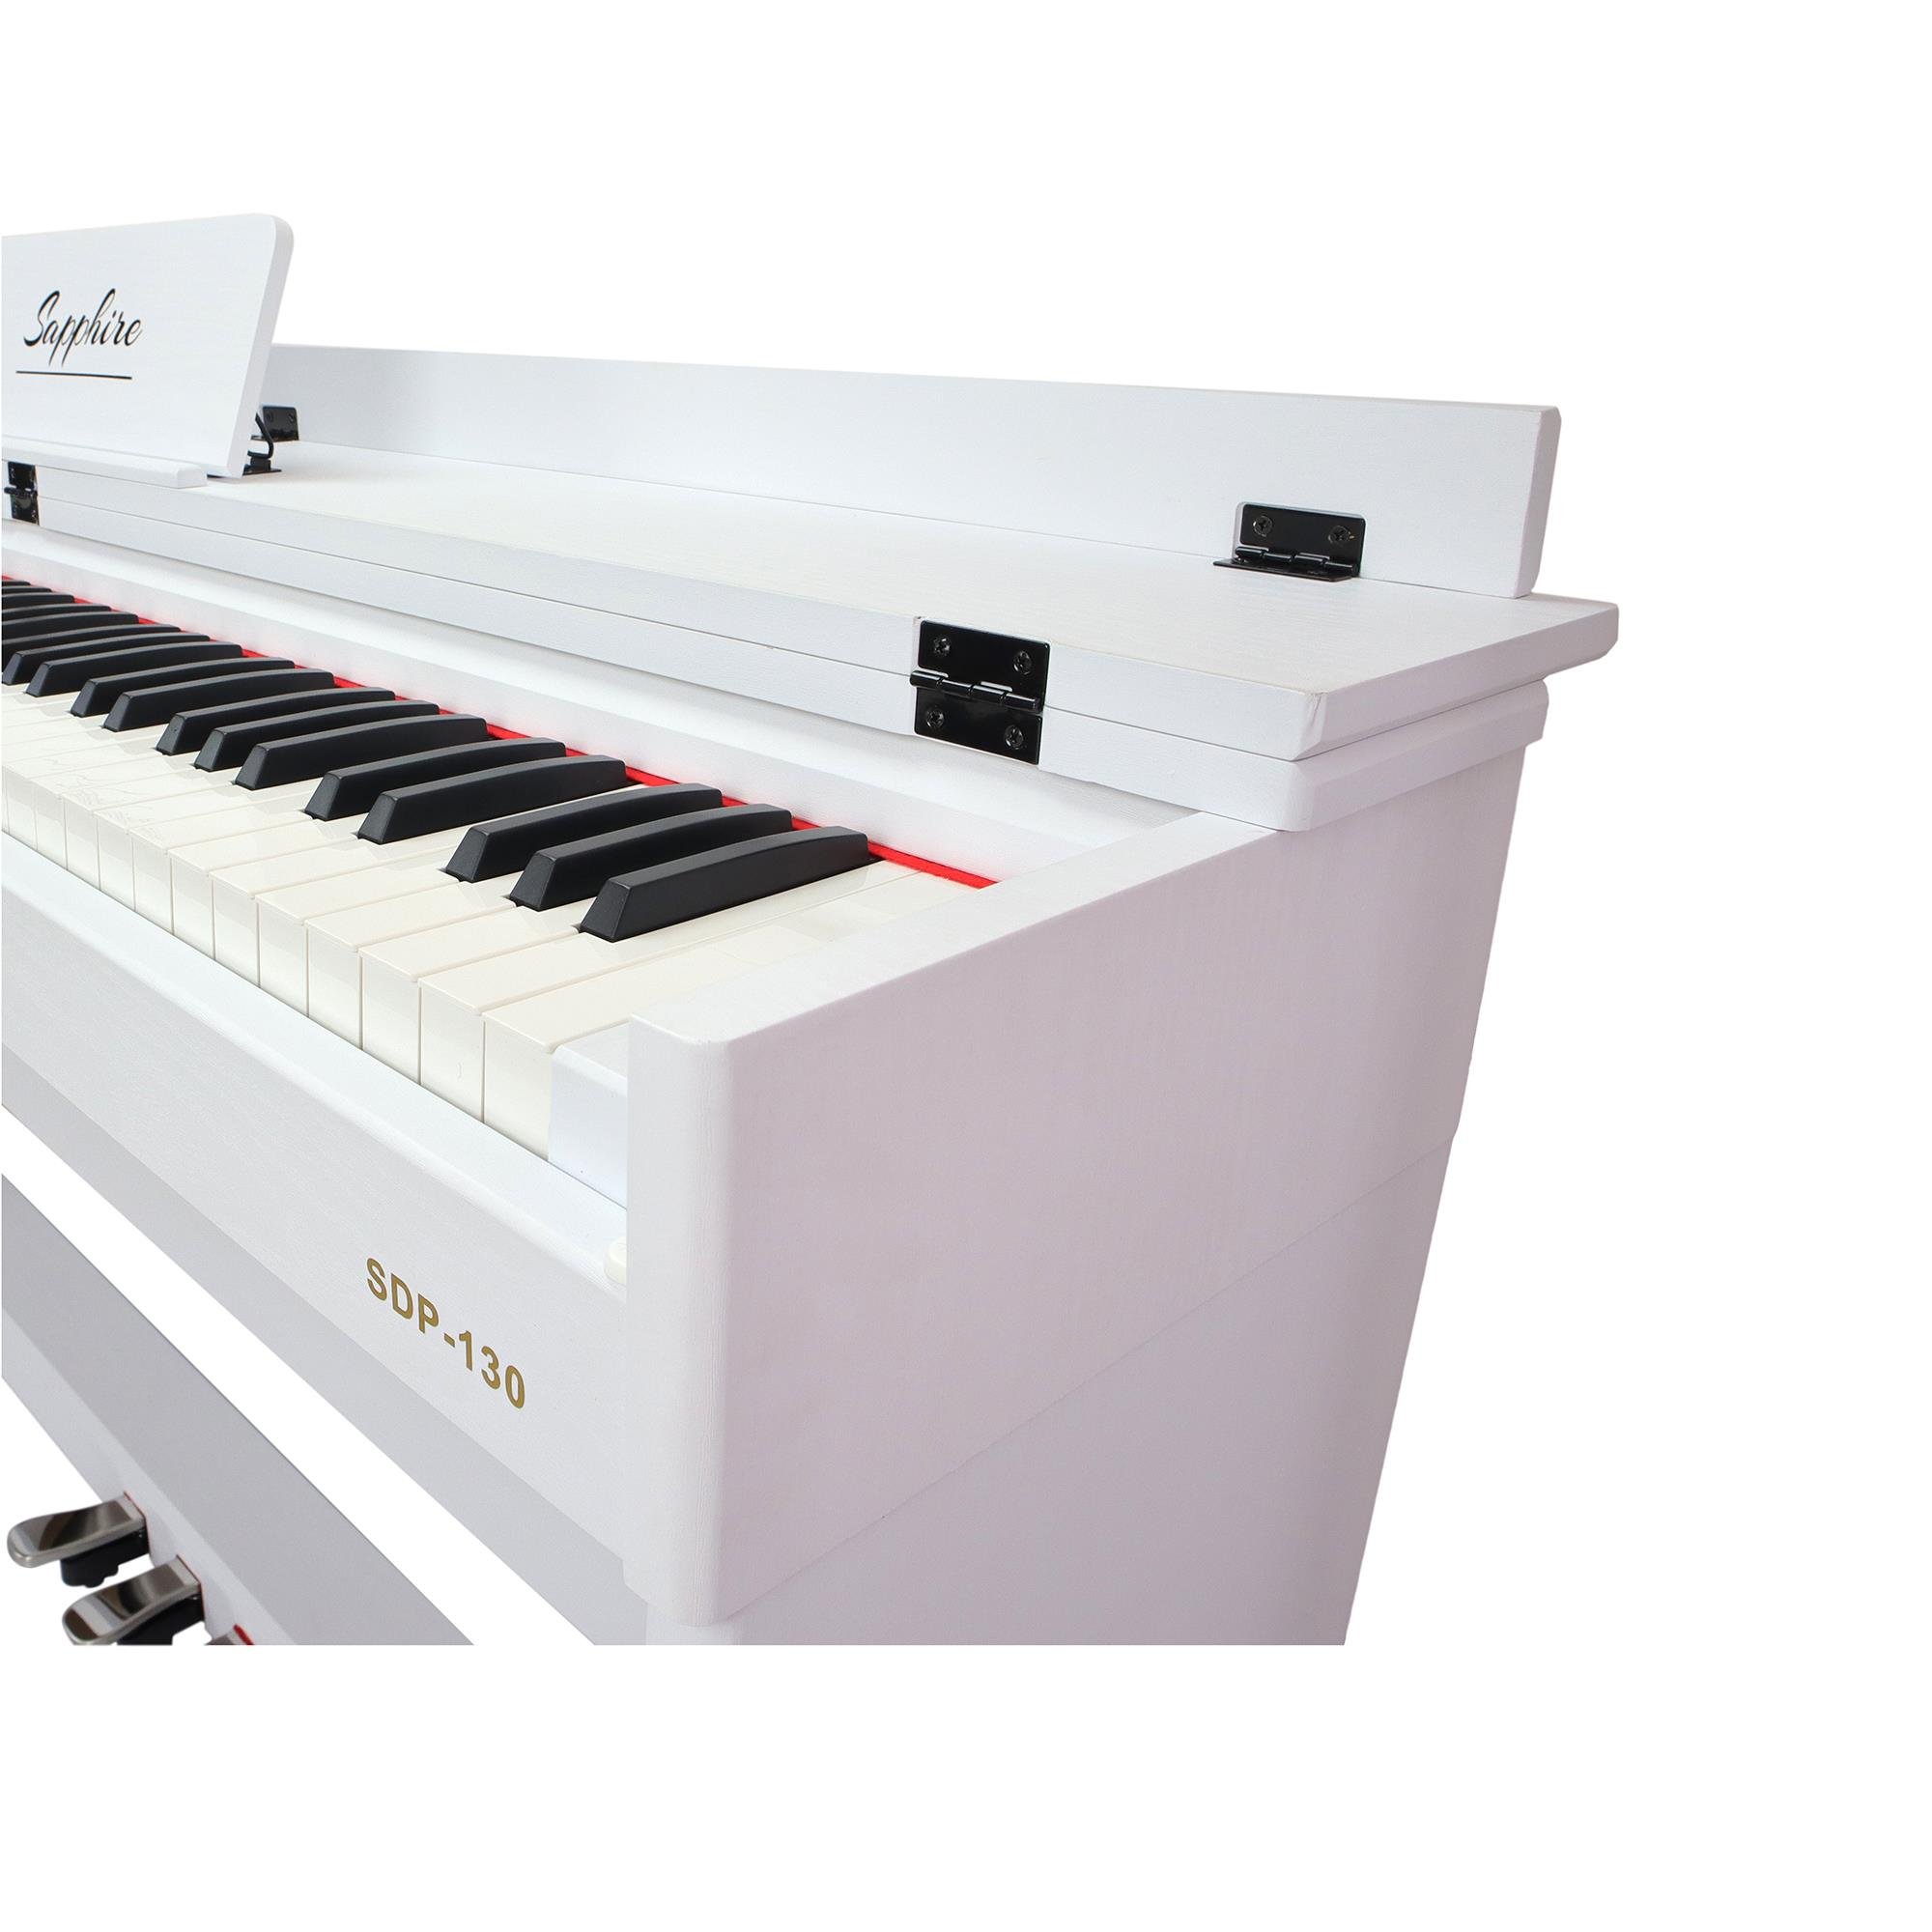 jWIN SDP-130 Tuş Hassasiyetli 88 Tuşlu Dijital Piyano - Beyaz